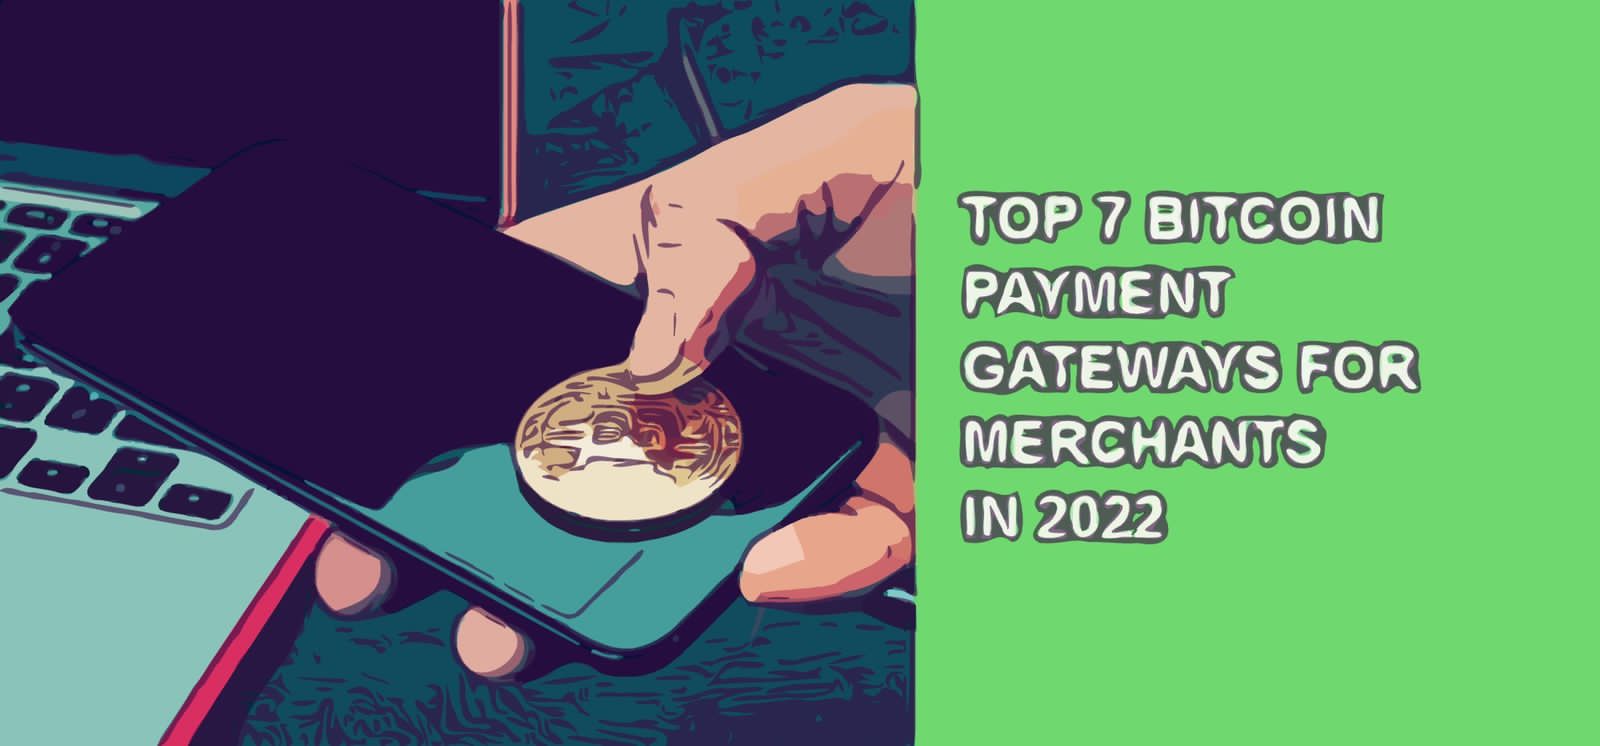 Top 7 bitcoin payment gateways for merchants